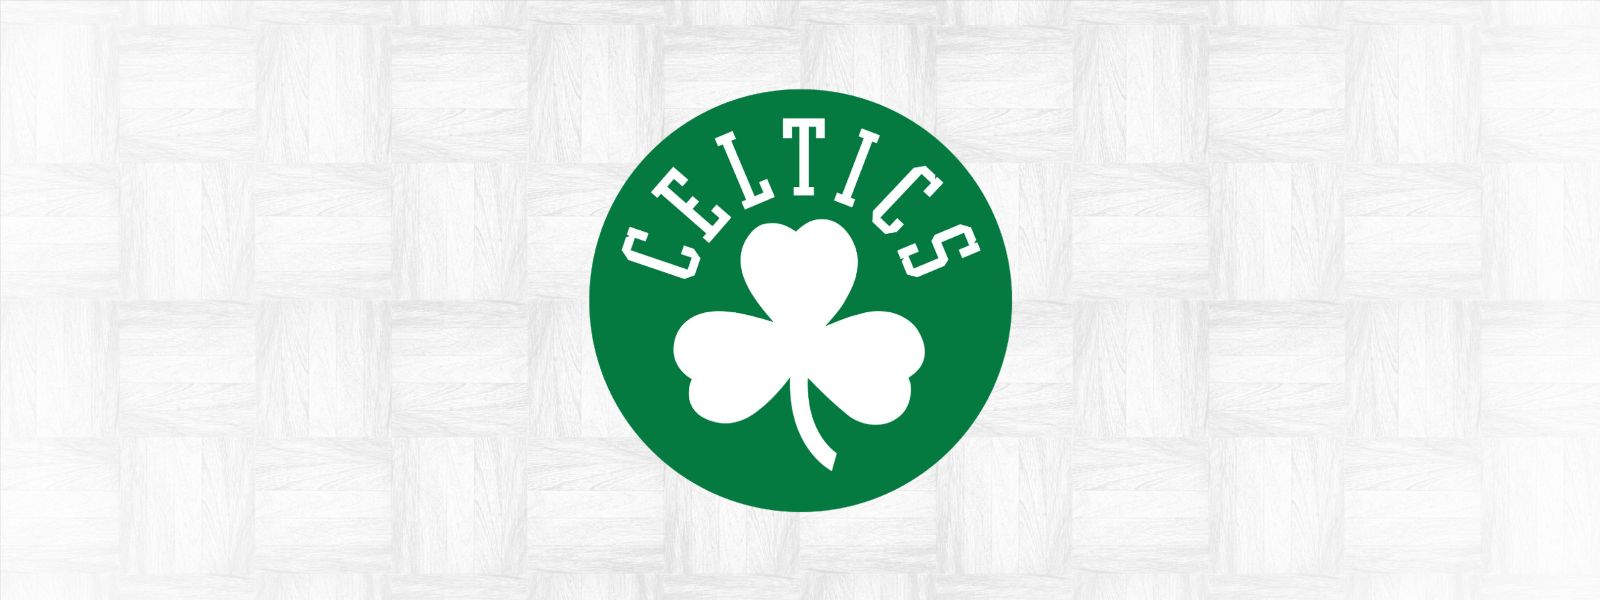 More Info for Celtics vs. Jazz